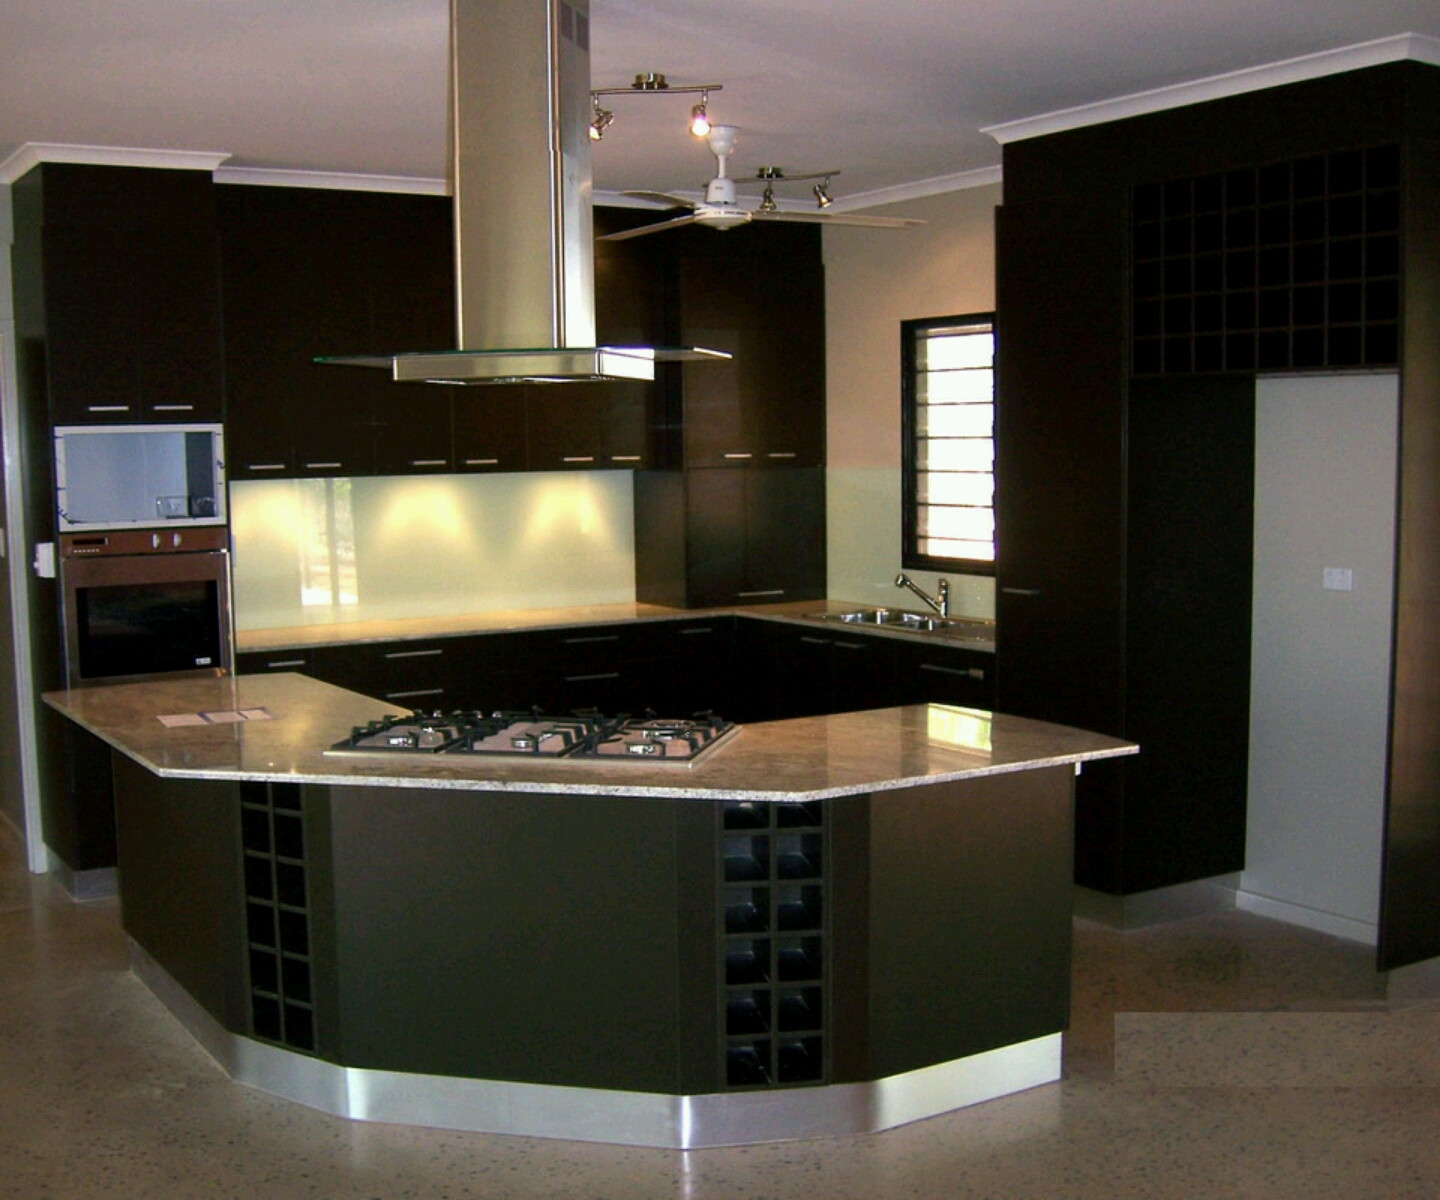 Modern Kitchen Cabinet Design Photos
 New home designs latest Modern kitchen cabinets designs